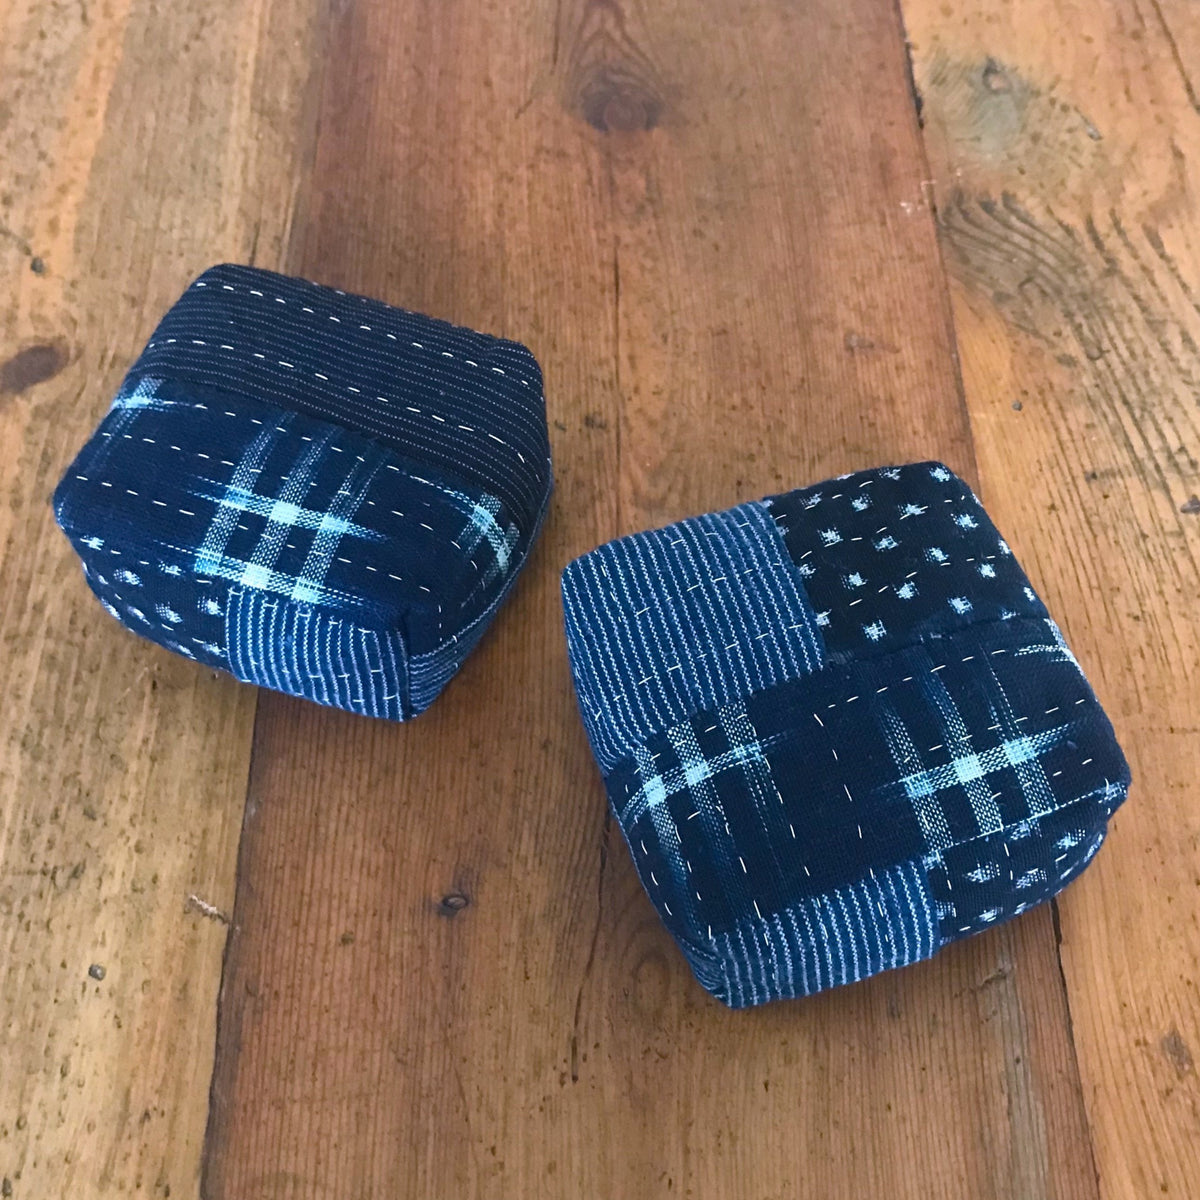 Cube Pin Cushion Kit